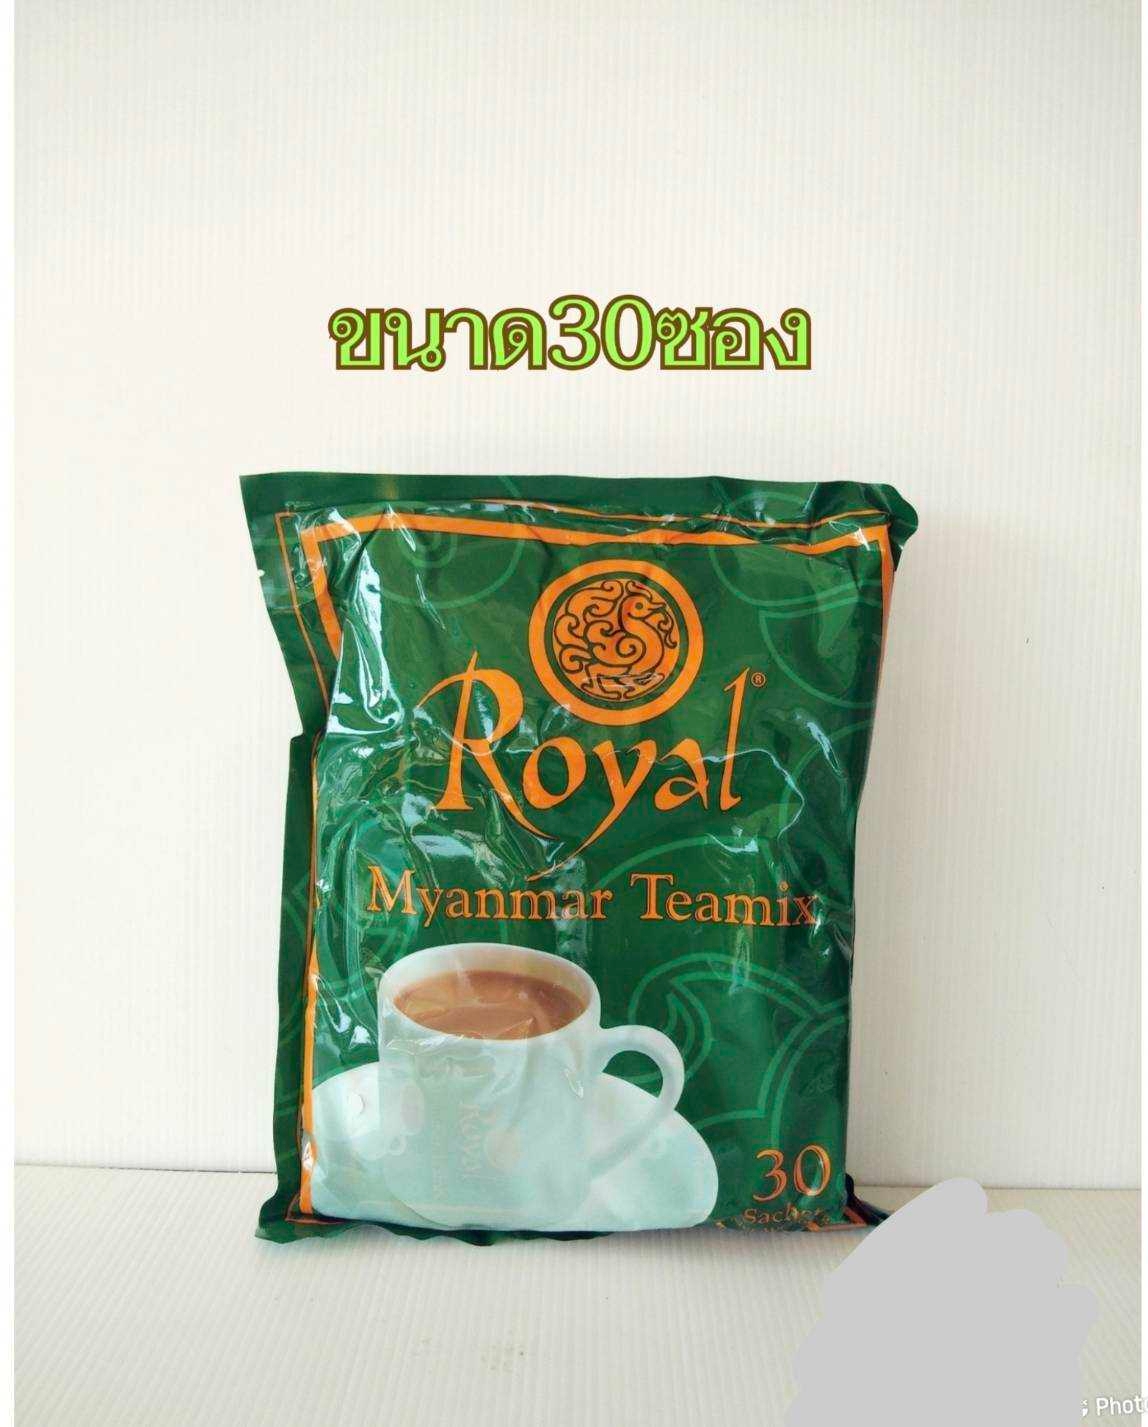 ชาพม่า (1แพ็ค/30ซอง) Royal Myanmar Teamix ชานม ชาหอม ชาเย็น ชาร้อน 3-in-1 : 248SHOP